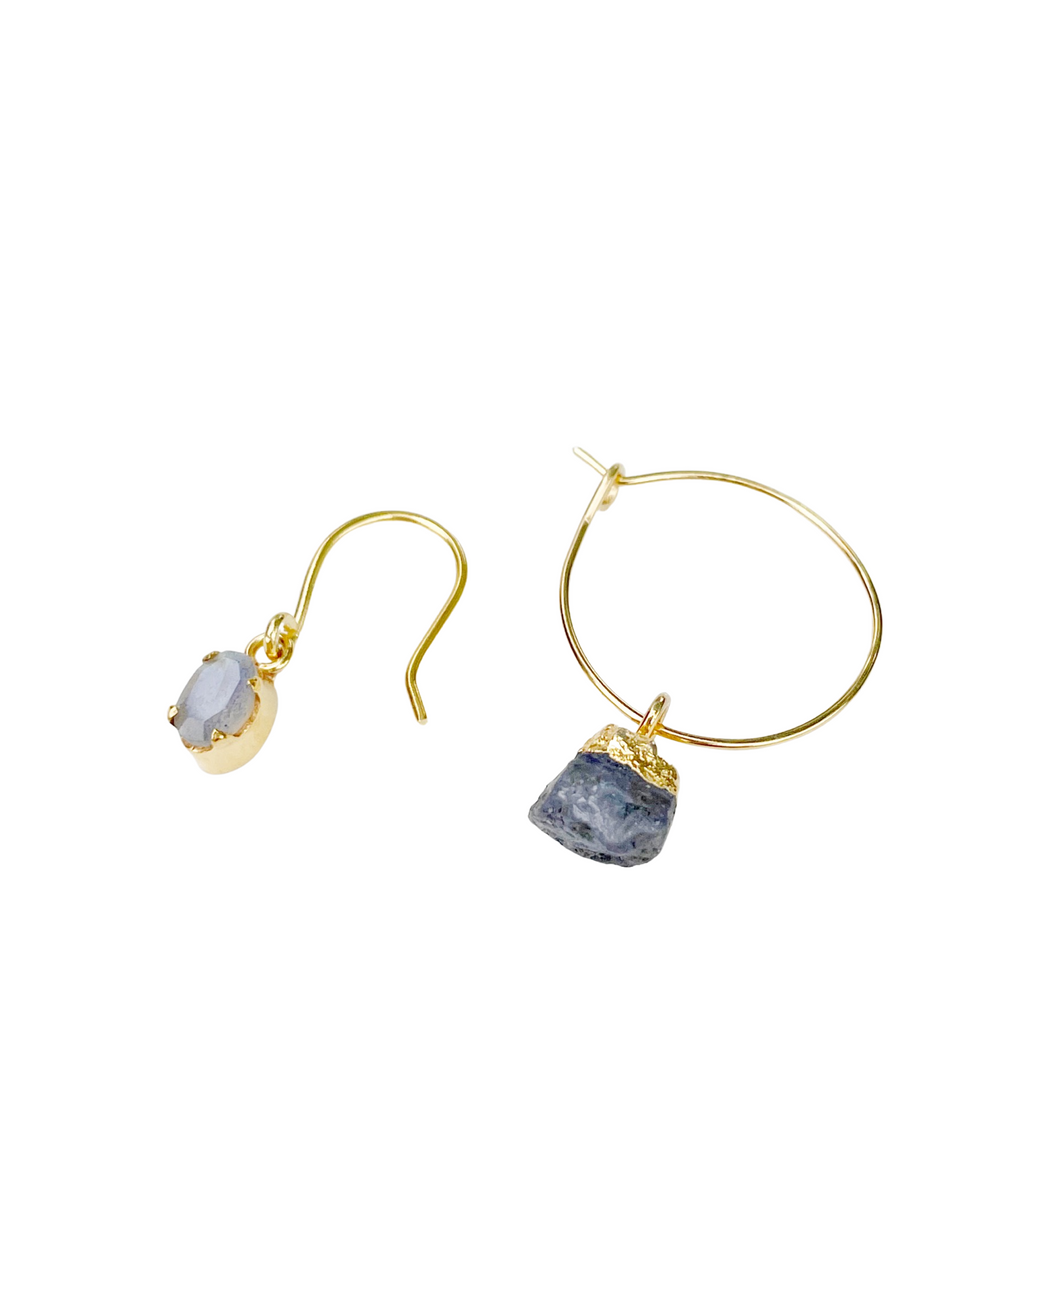 Boucles d’oreilles asymétriques en laiton doré et pierres semi-précieuses Créole bleue